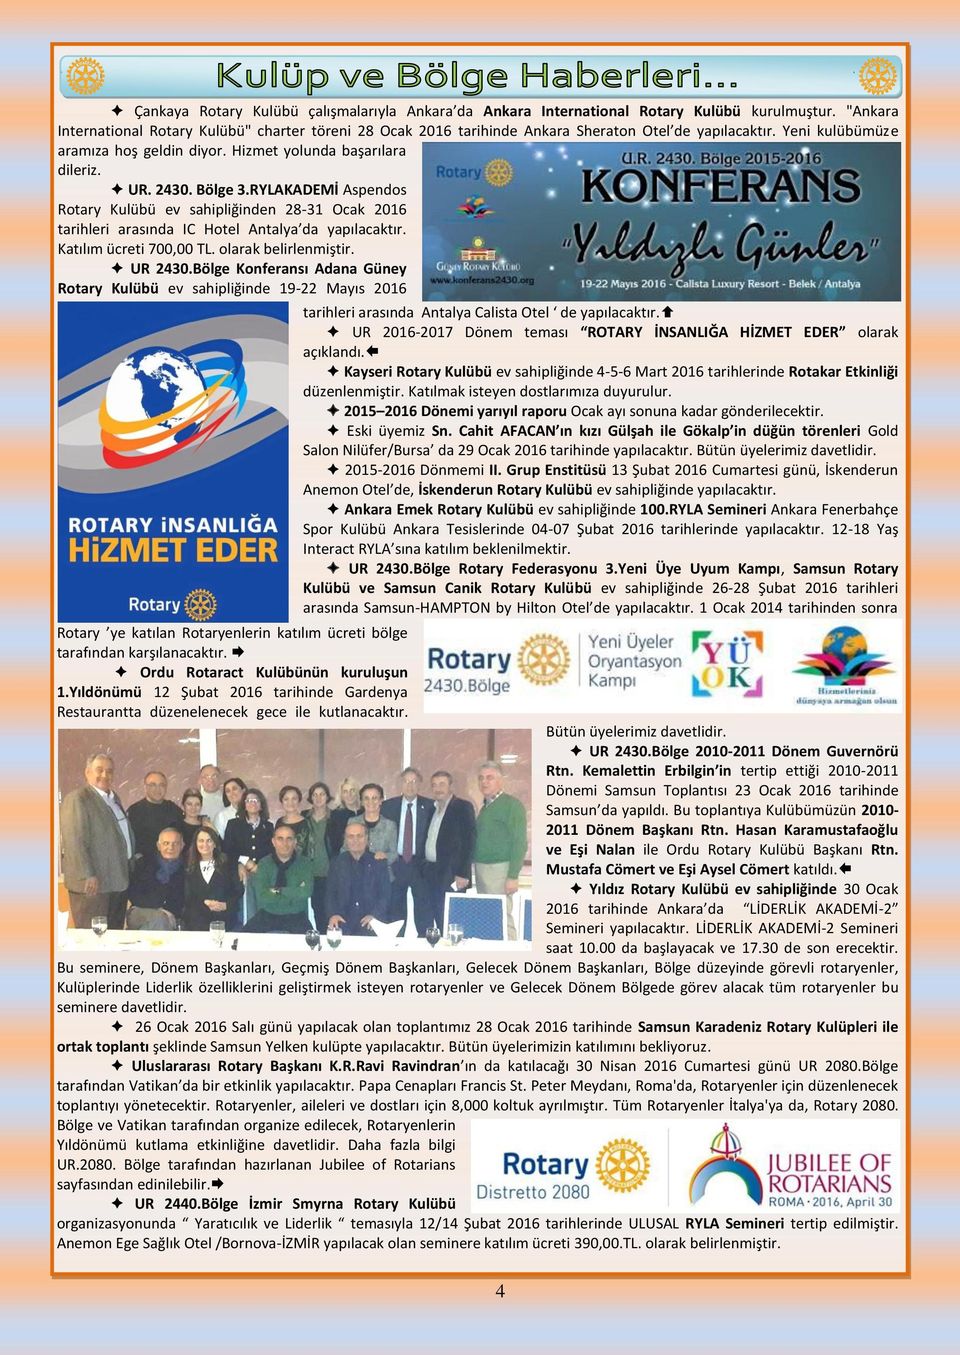 Bölge 3.RYLAKADEMİ Aspendos Rotary Kulübü ev sahipliğinden 28-31 Ocak 2016 tarihleri arasında IC Hotel Antalya da yapılacaktır. Katılım ücreti 700,00 TL. olarak belirlenmiştir. UR 2430.